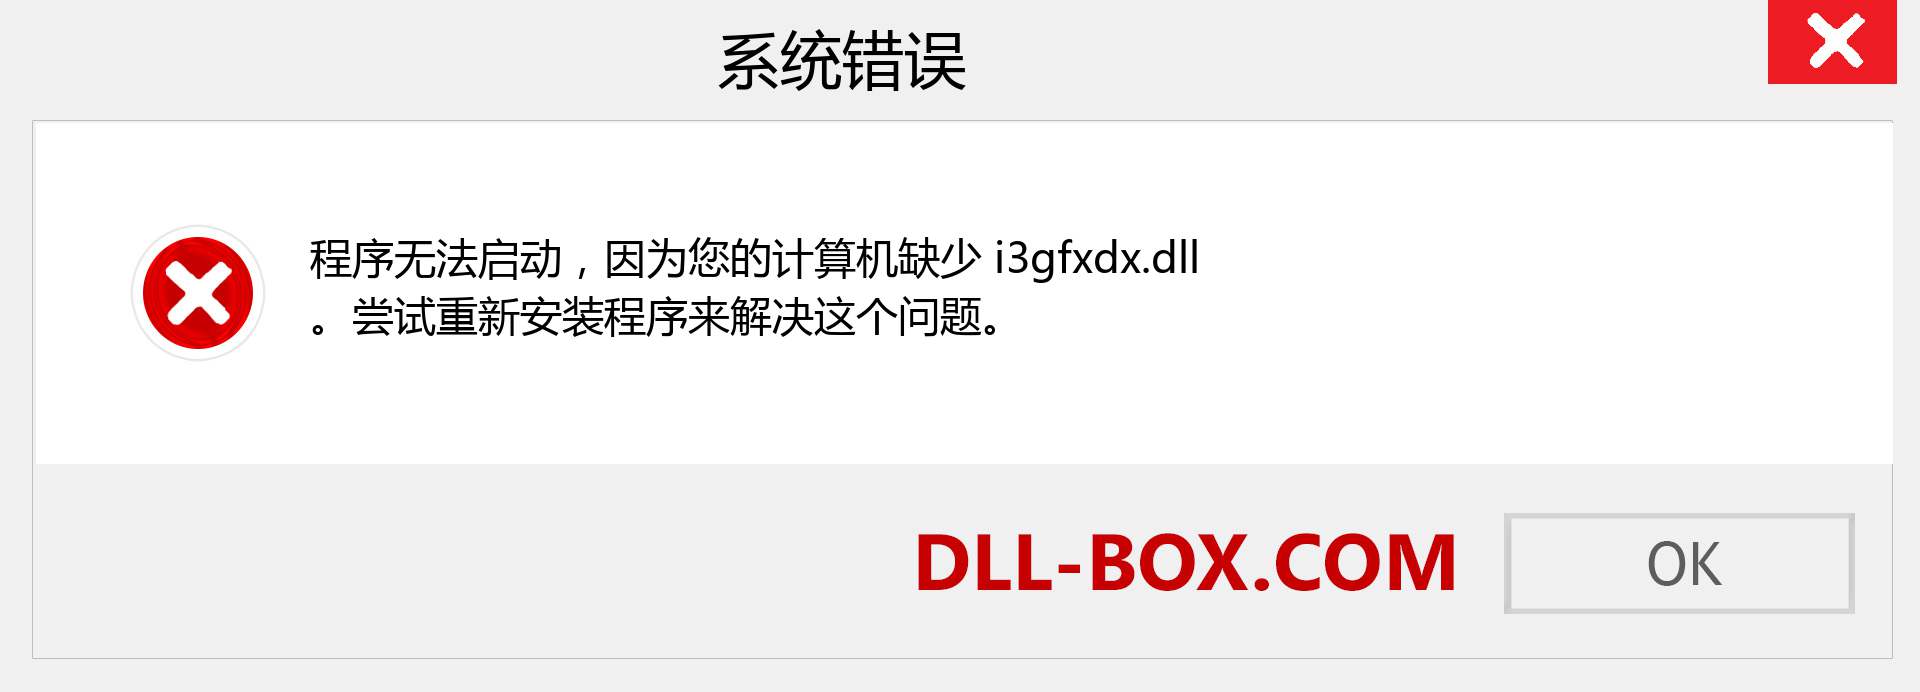 i3gfxdx.dll 文件丢失？。 适用于 Windows 7、8、10 的下载 - 修复 Windows、照片、图像上的 i3gfxdx dll 丢失错误